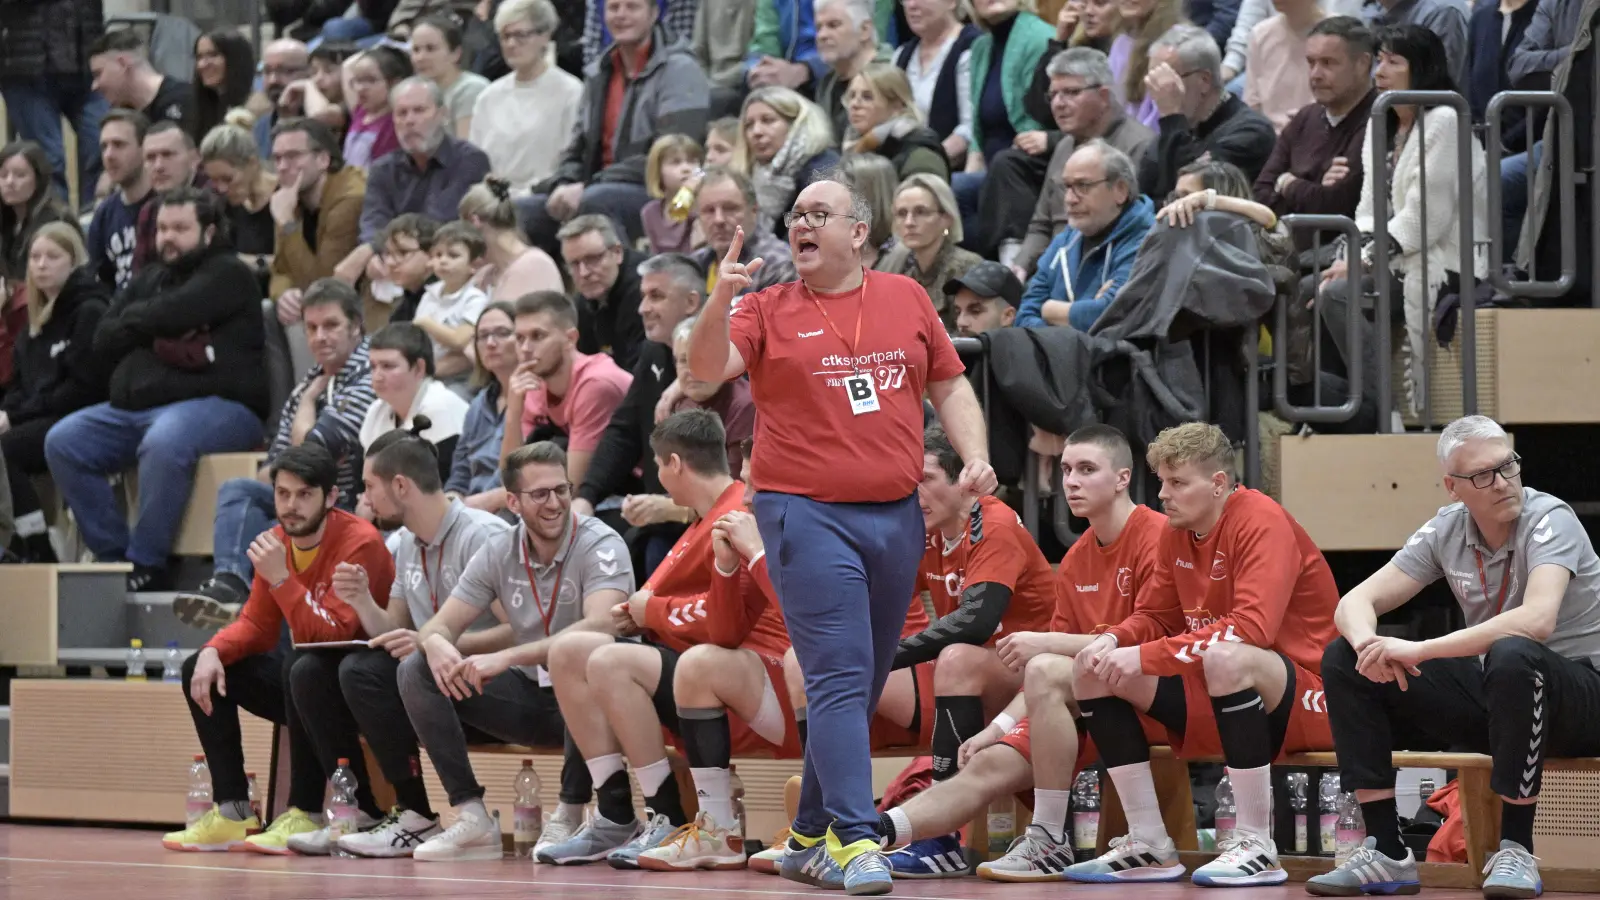 Ein voll besetzte Auswechselbank und viele Zuschauer im Rücken: So gefällt Bernd Becker (vorne) Handball in Rothenburg. „Die Spiele bei uns sind ein Event“, sagt der Trainer. (Foto: Martin Rügner)